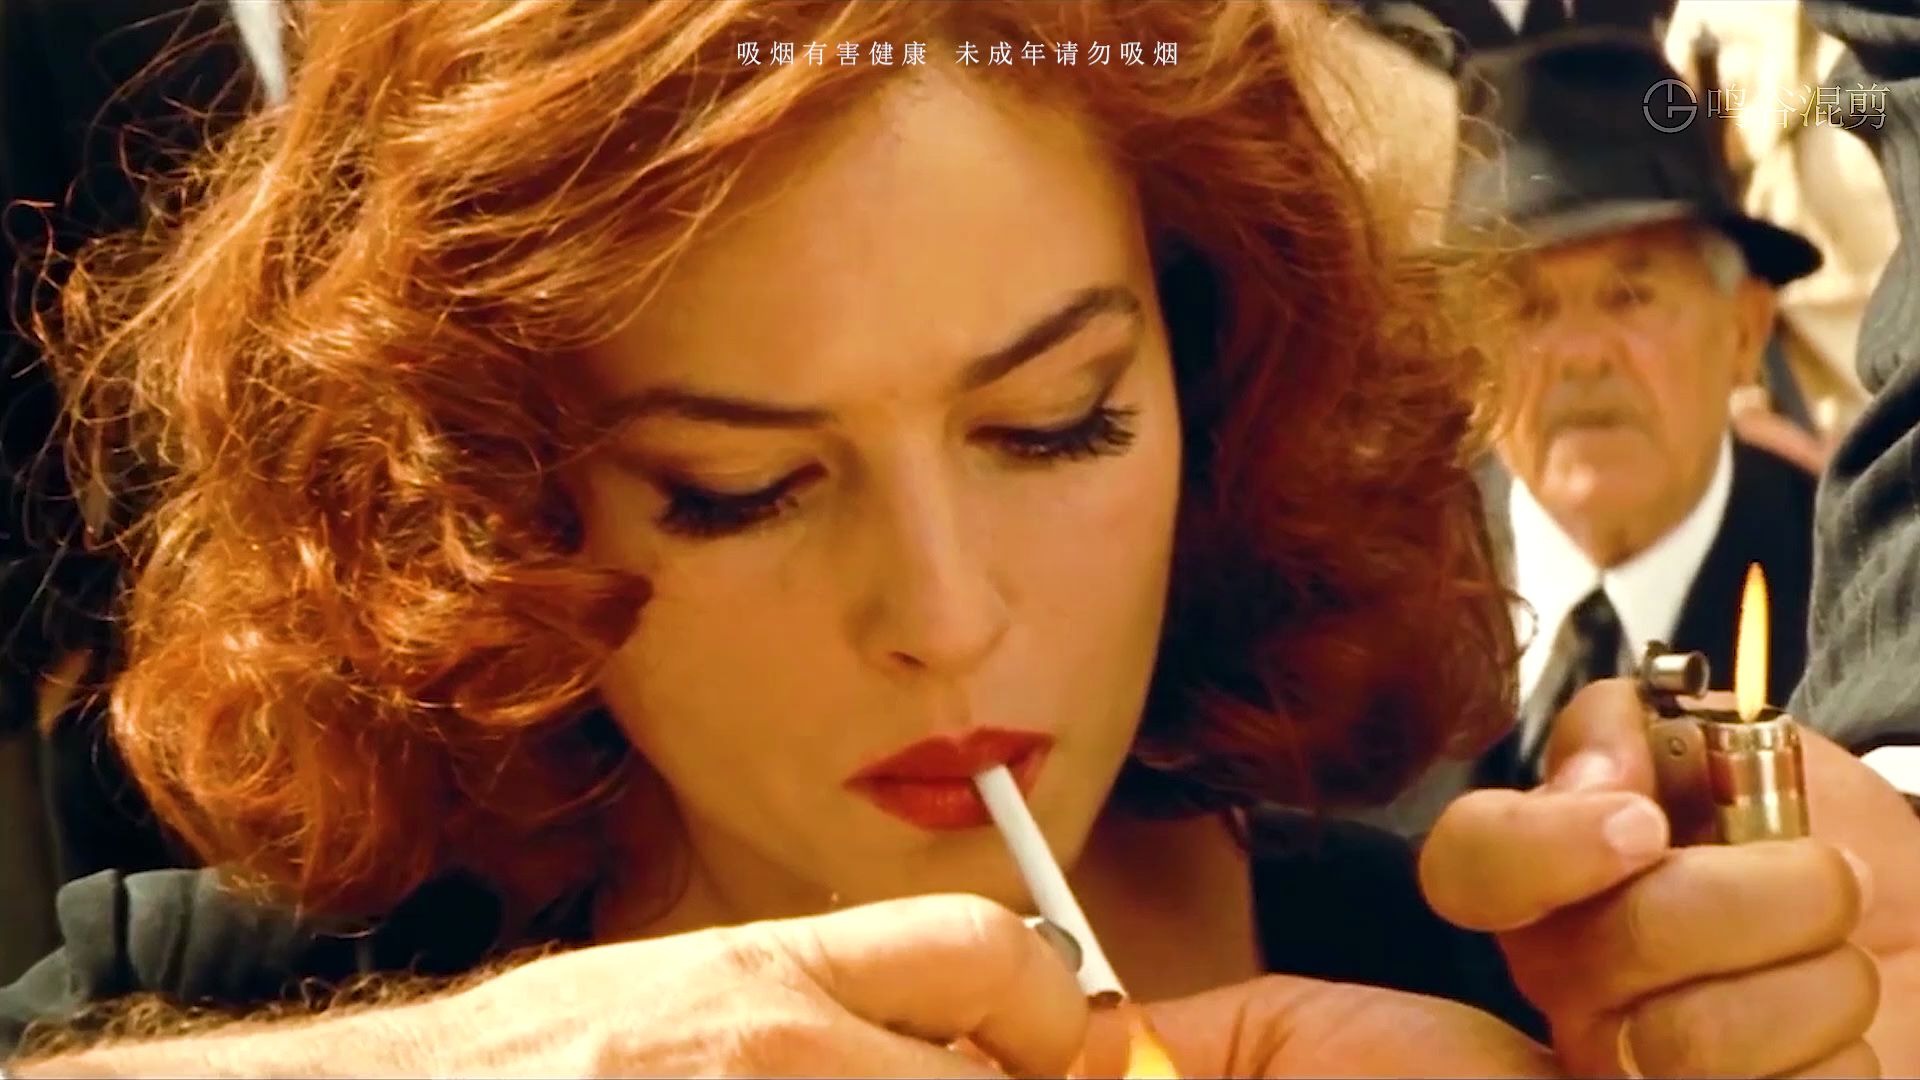 漂亮女生抽烟 女神图片